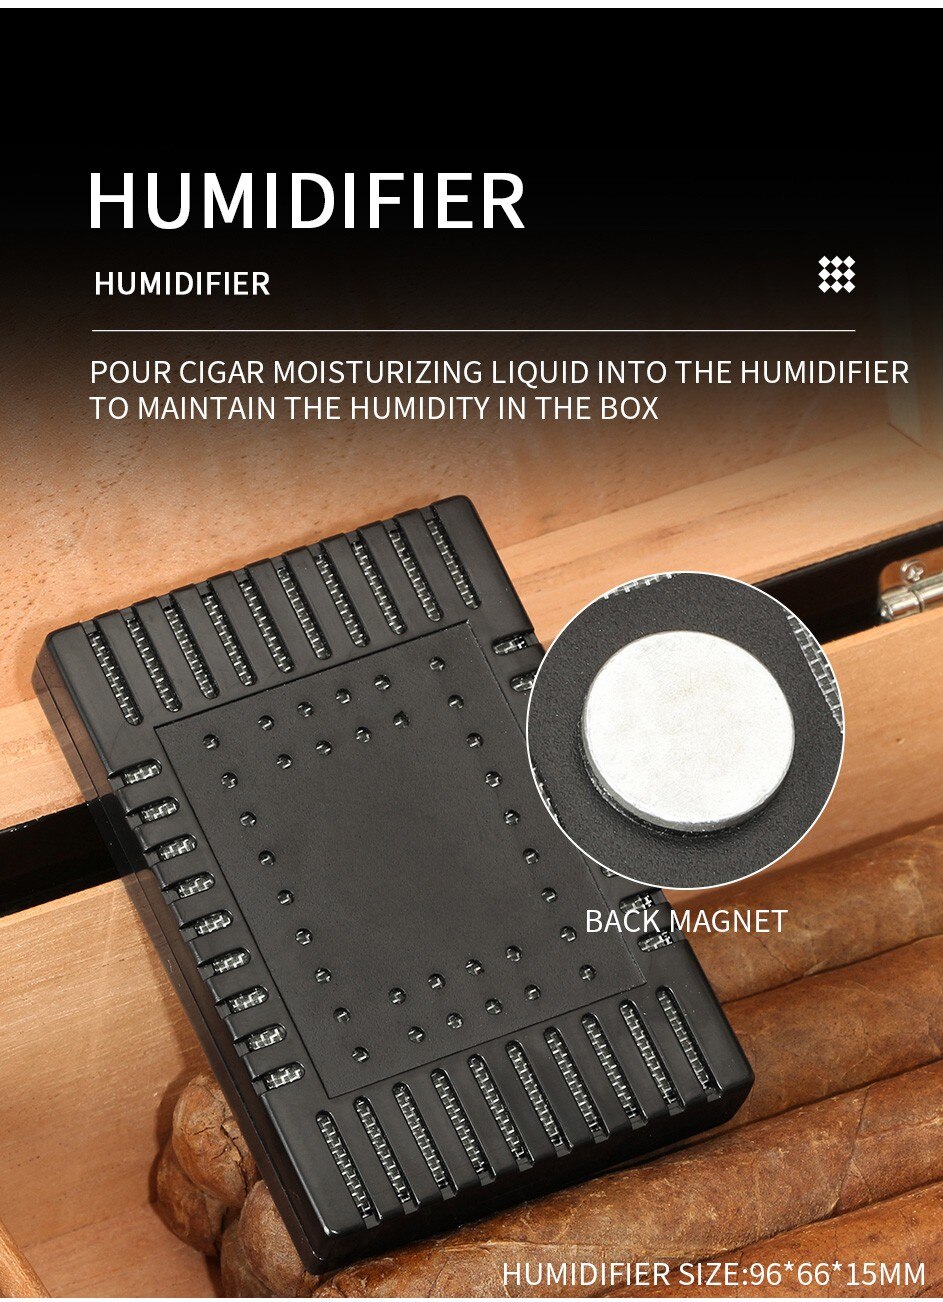 Cave à cigares Humidor Humidificateur avec hygromètre - 35 cigares (Marron)